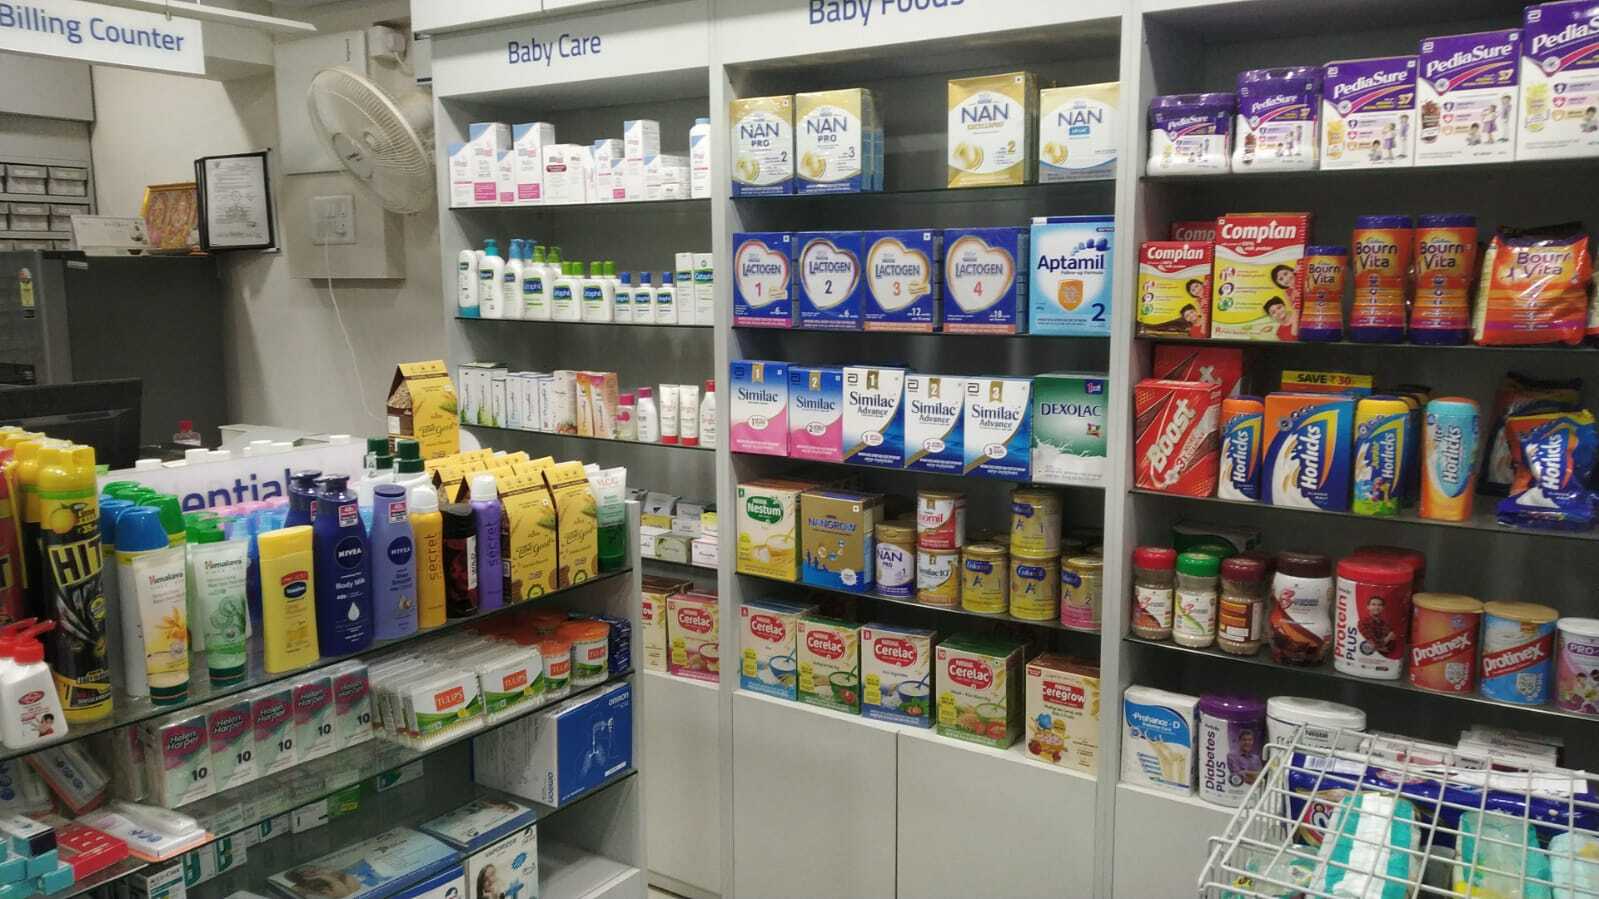 Aster Pharmacy in Chikkanayakanahalli, Bangalore